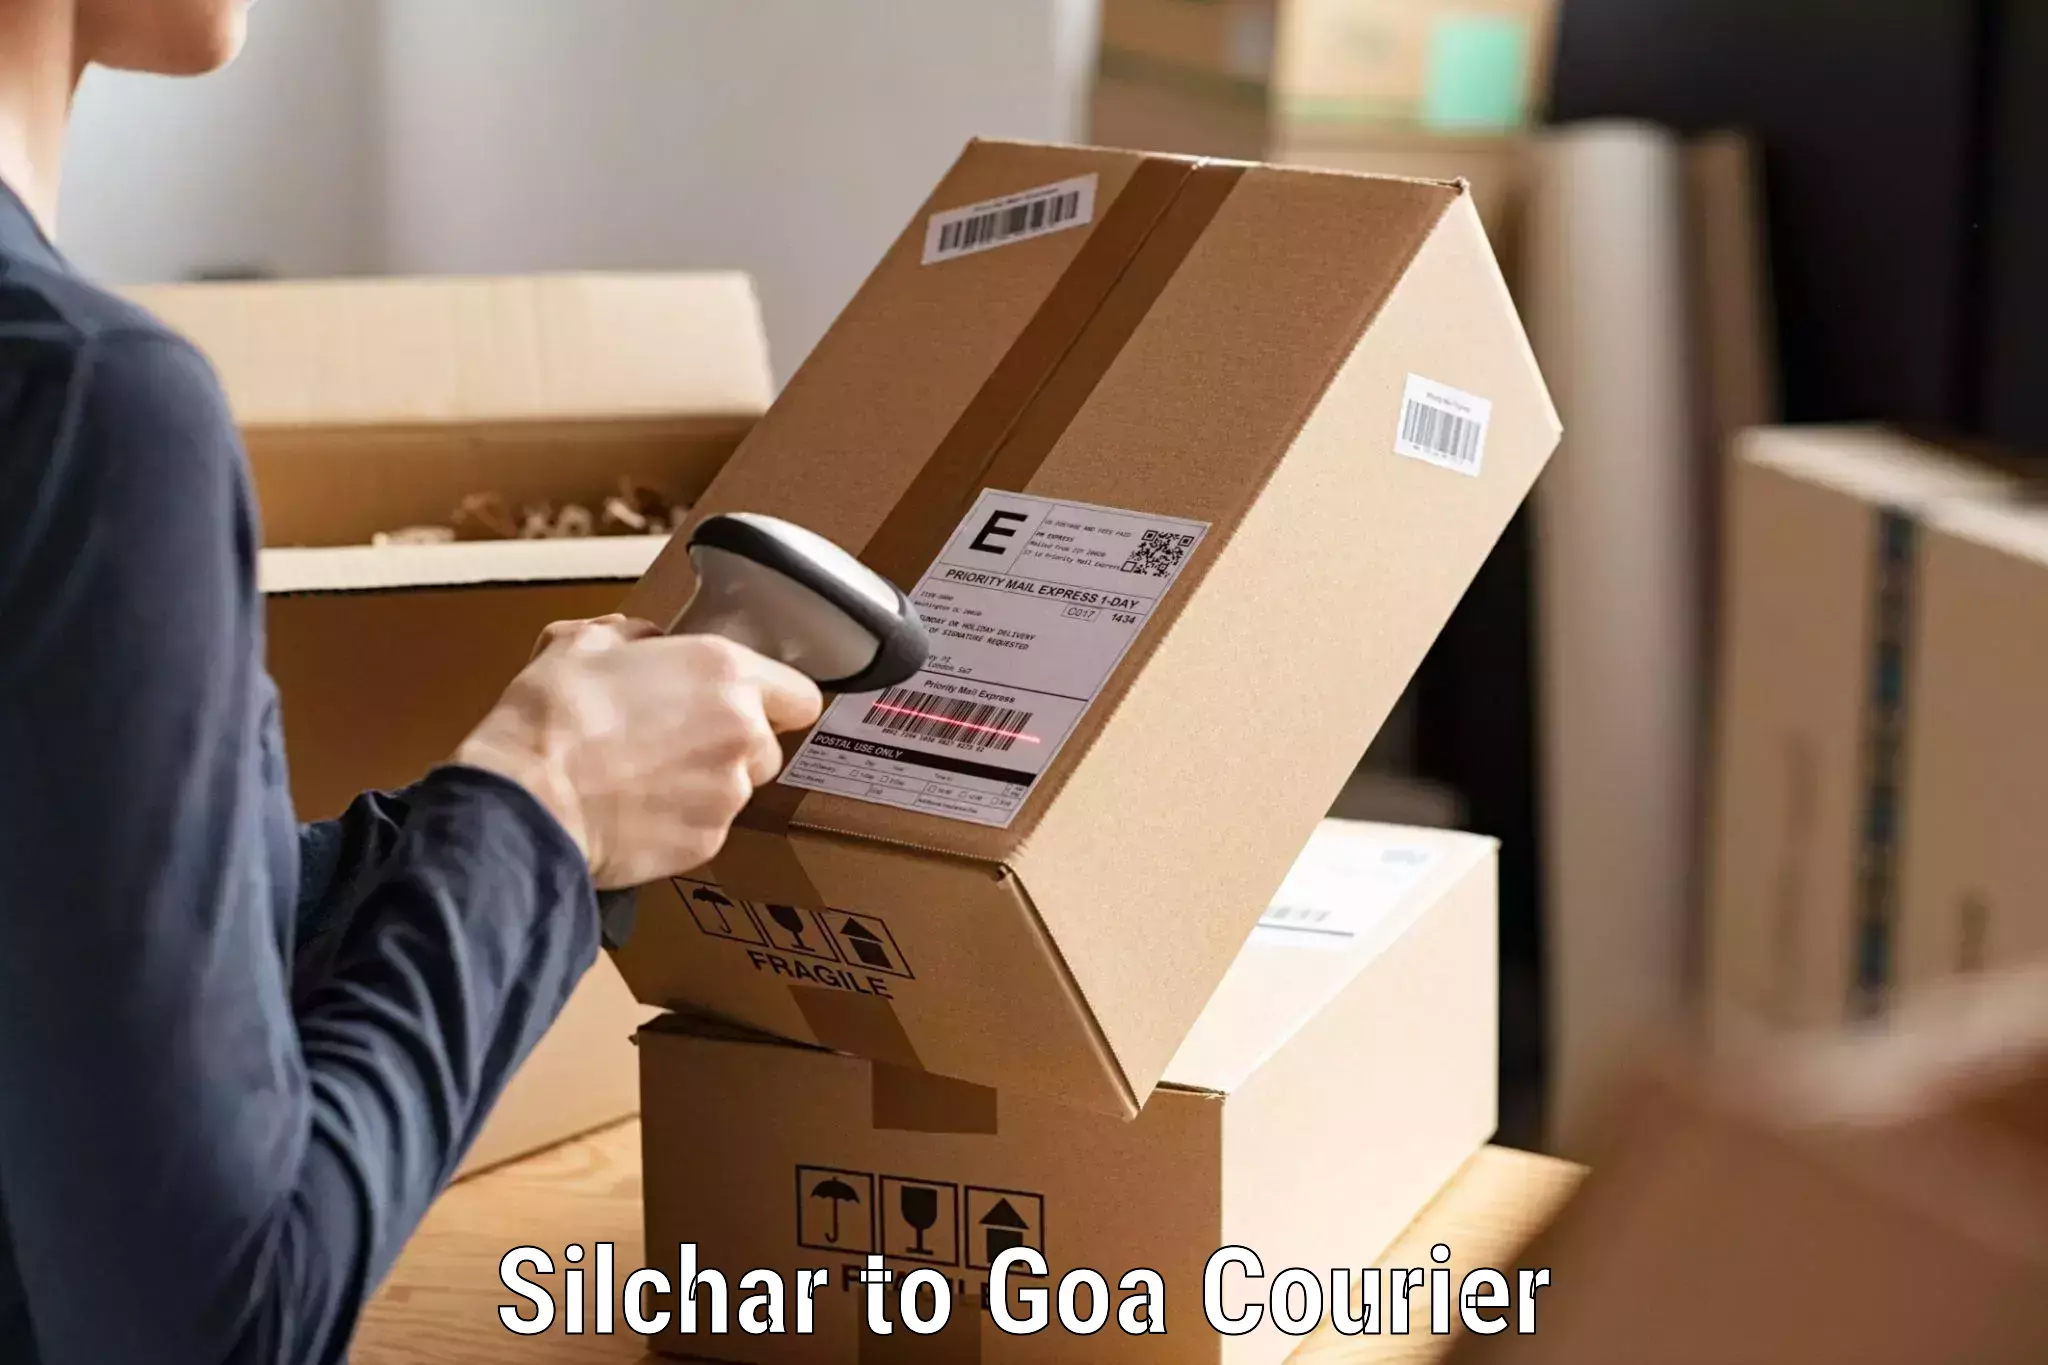 Customer-centric shipping Silchar to Vasco da Gama